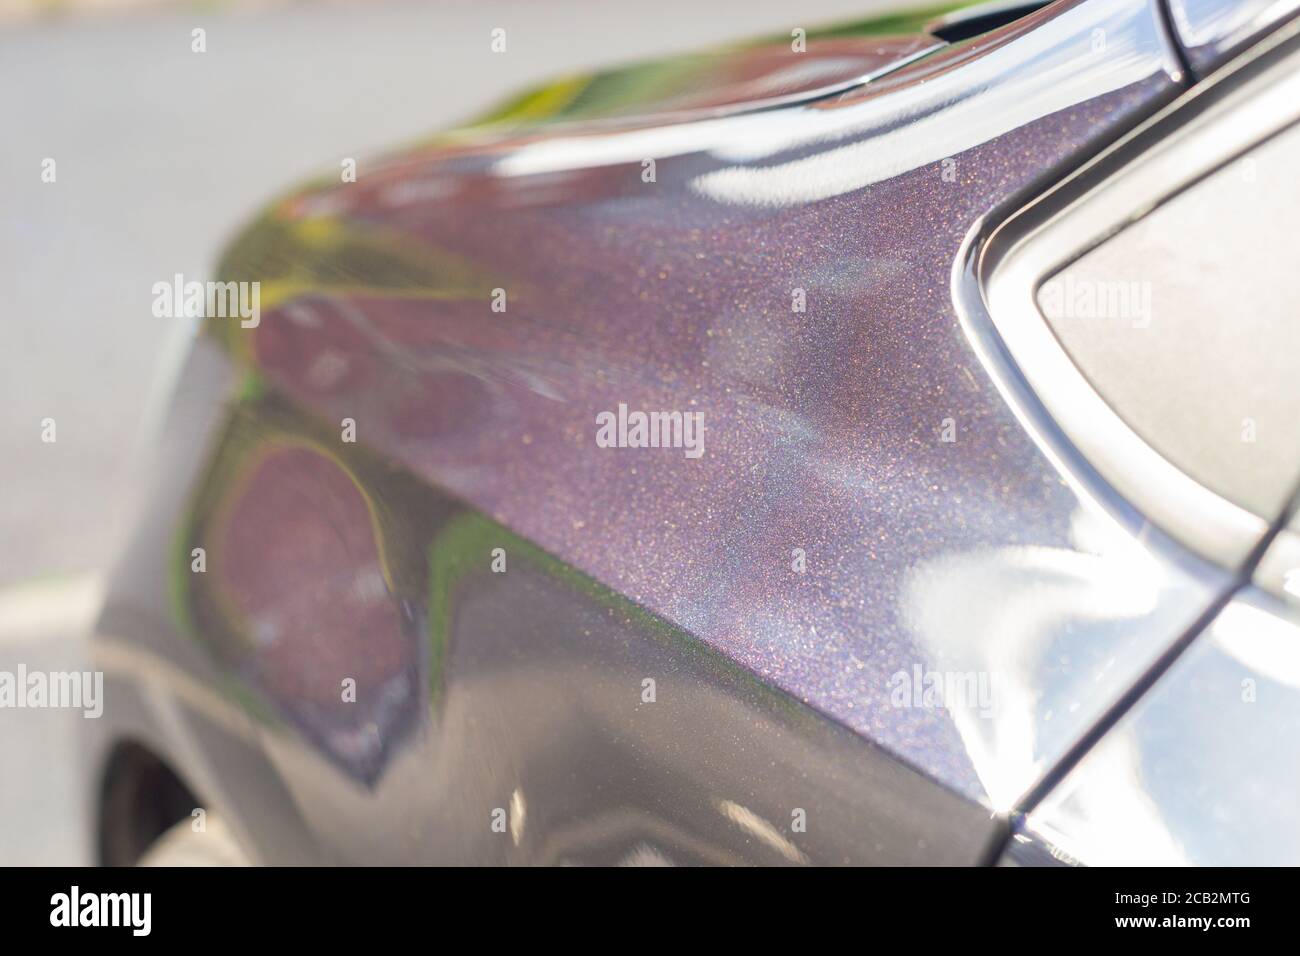 Frisch polierte und gewachste Karosserie eines Autos mit schwarzer Perlmutt- Farbe. Sie erscheint aus der Ferne schwarz, hat aber einen funkelnden  purpurnen Glanz aus nächster Nähe Stockfotografie - Alamy